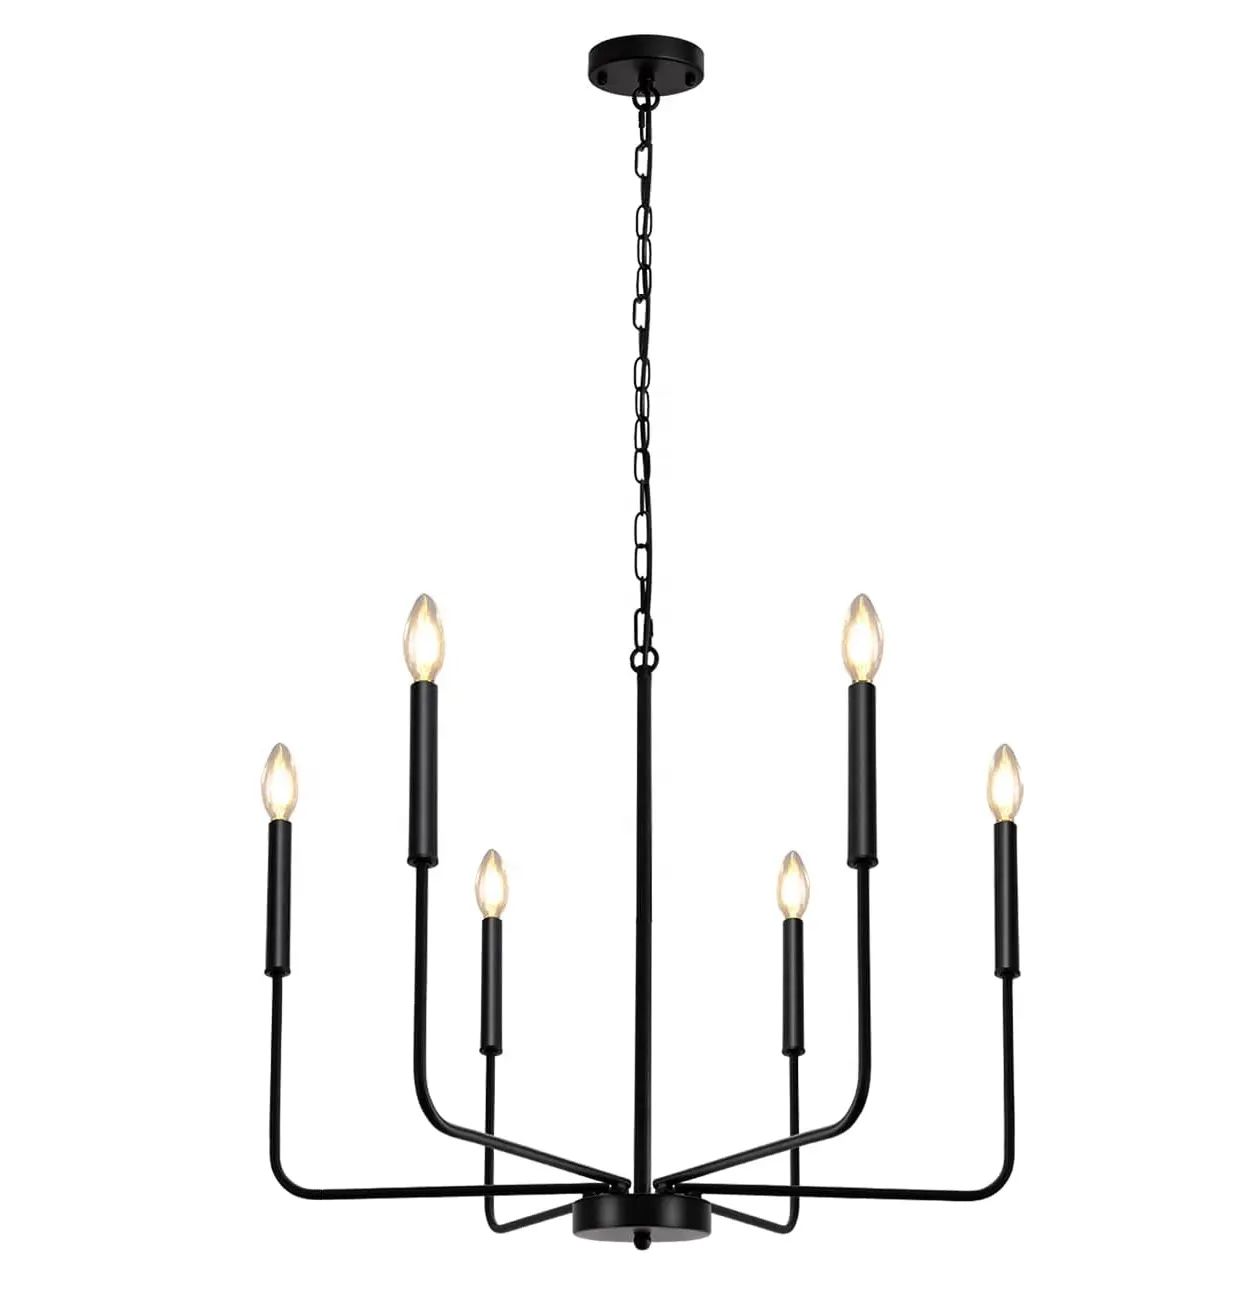 MEDISEN 6 lights Modern chandelier, indoor lighting black metal candle hanging pendant lamp